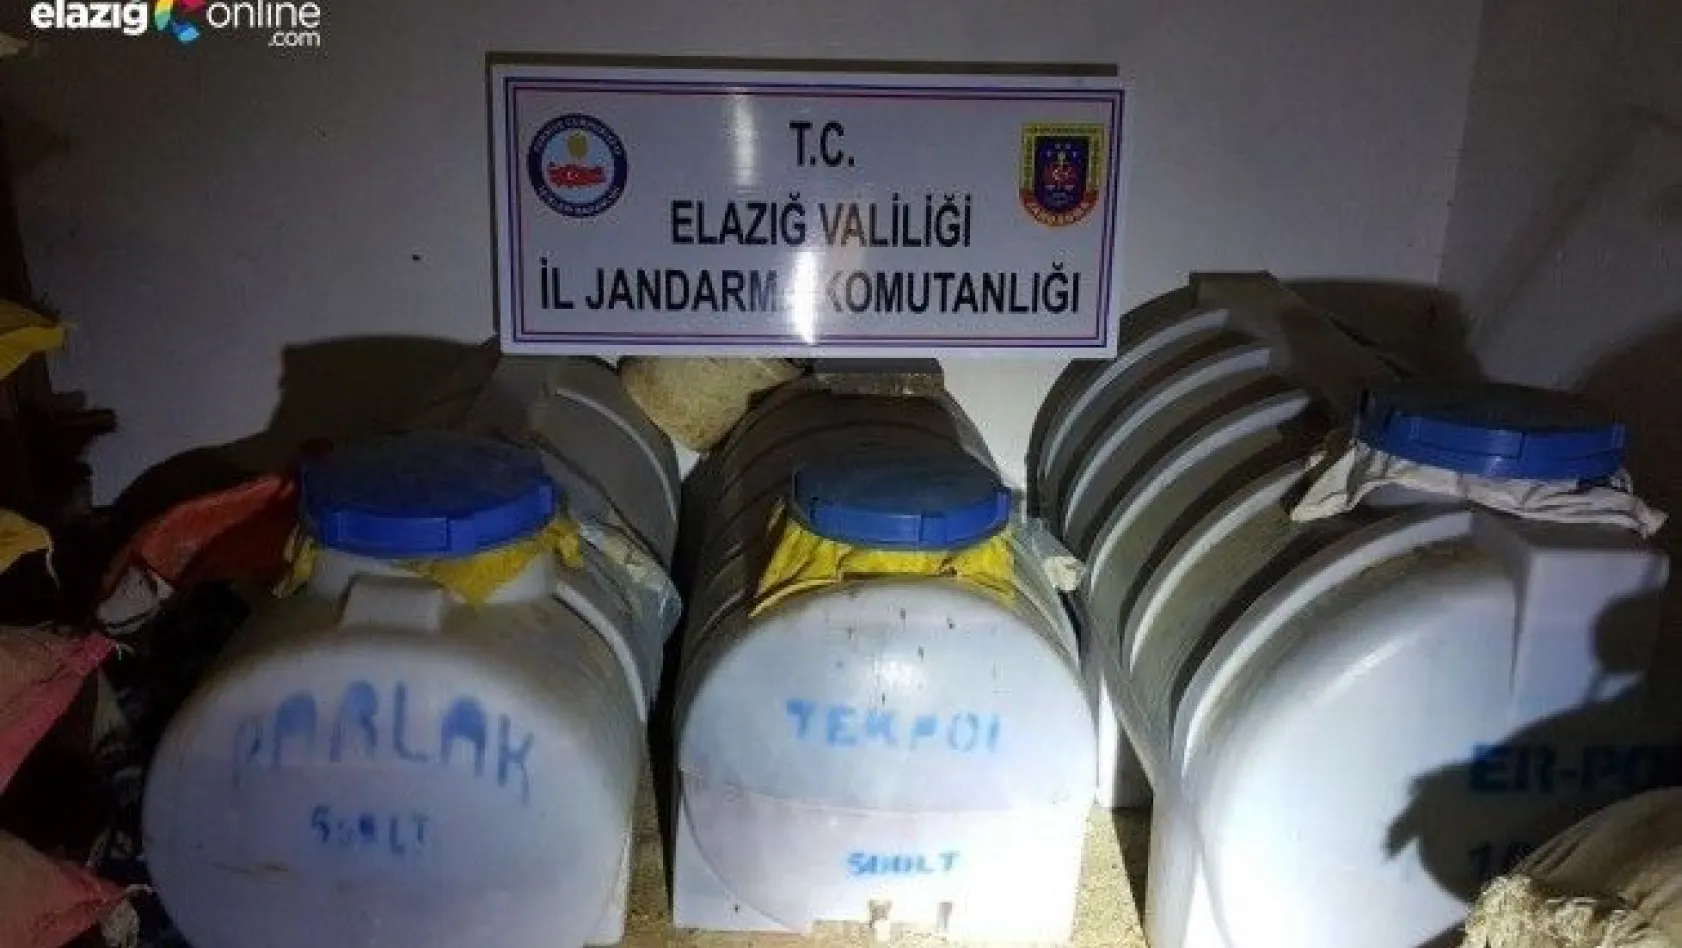 Elazığ'da 2 bin 270 litre kaçak içki ele geçirildi!